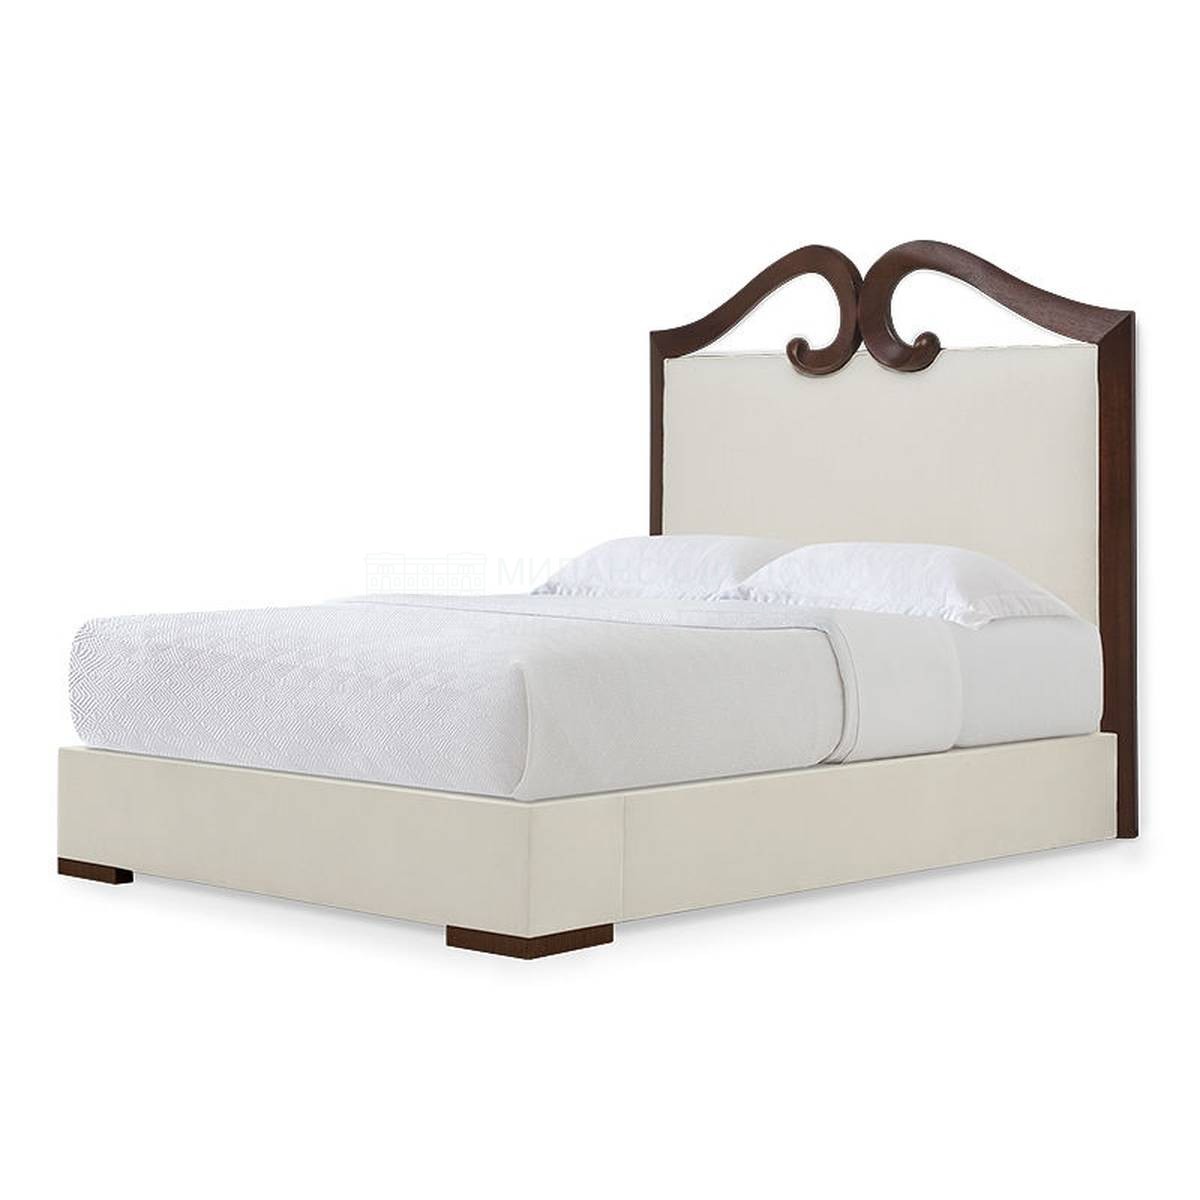 Кровать с комбинированным изголовьем Antibes bed из США фабрики CHRISTOPHER GUY